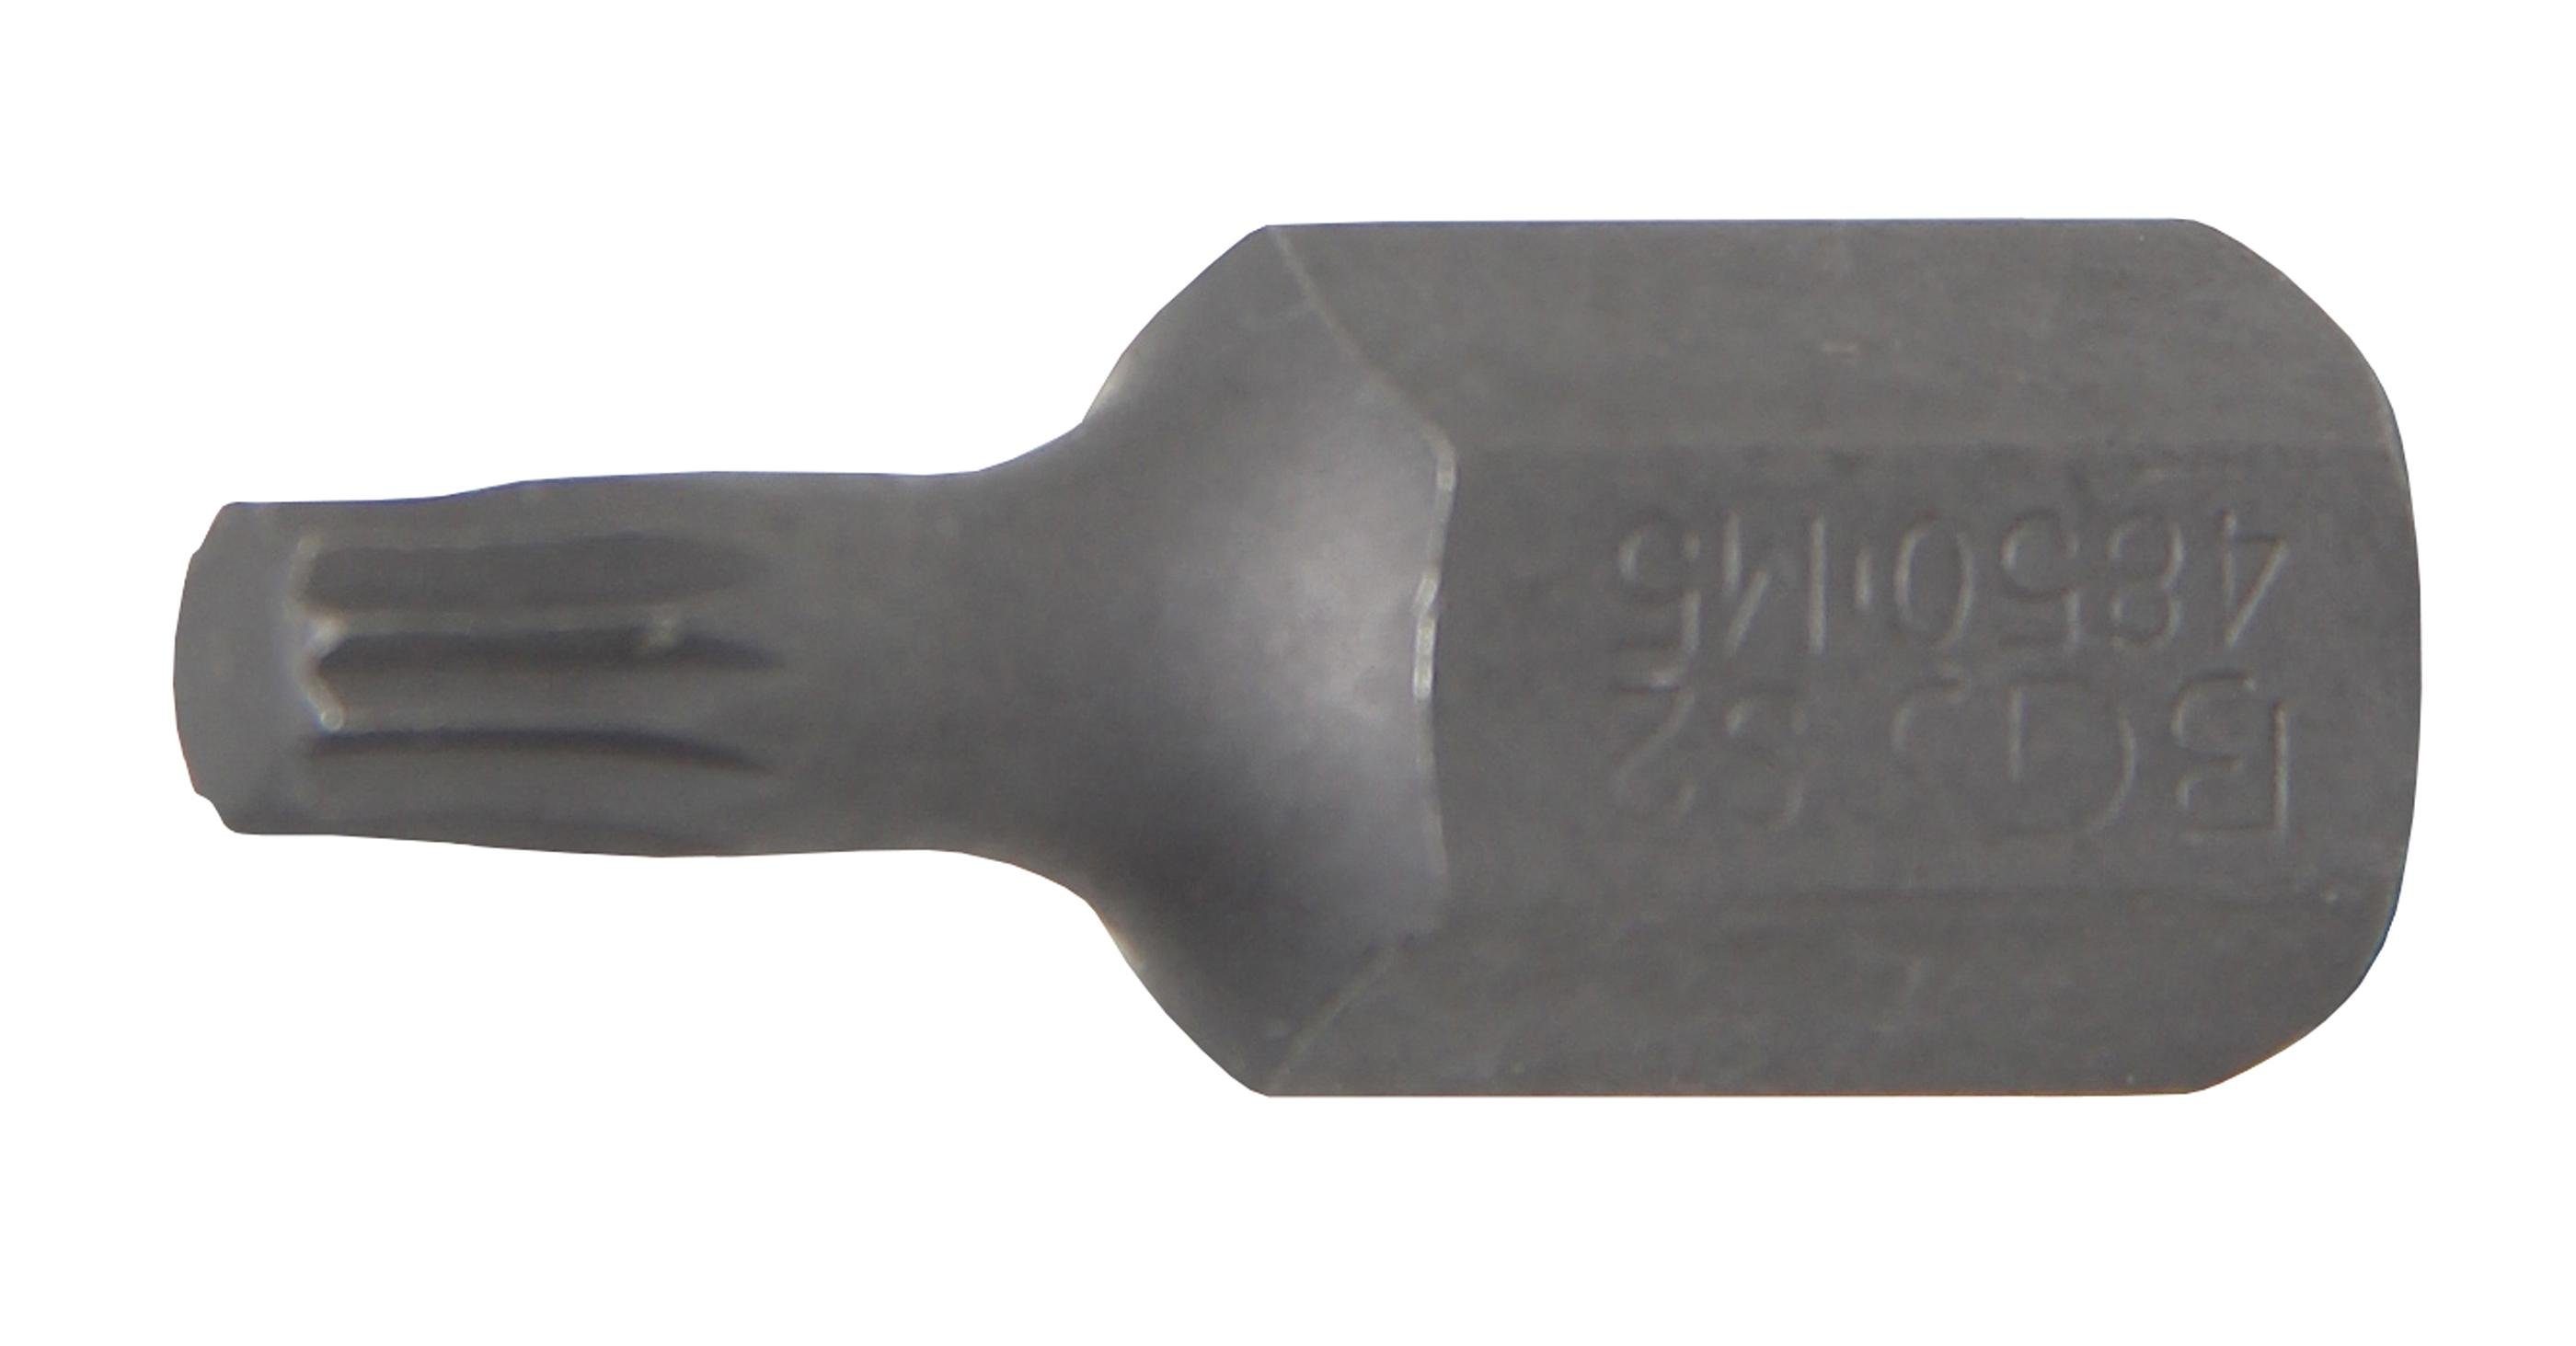 Innenvielzahn BGS Antrieb (3/8), 10 technic Bit-Schraubendreher Außensechskant M5 mm Bit, (für XZN)